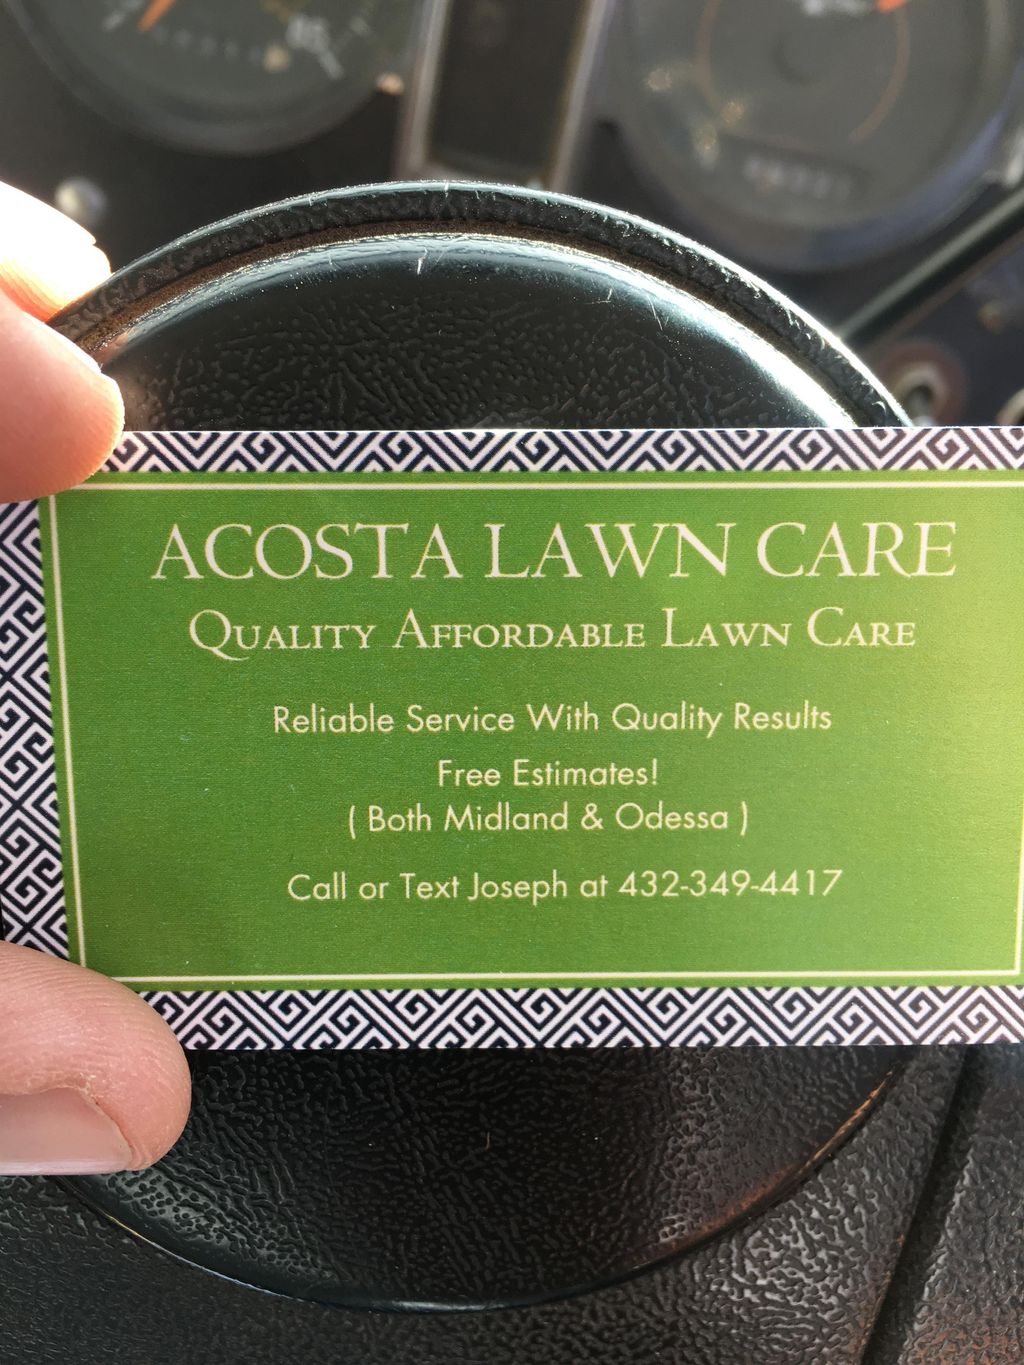 Acosta lawn care